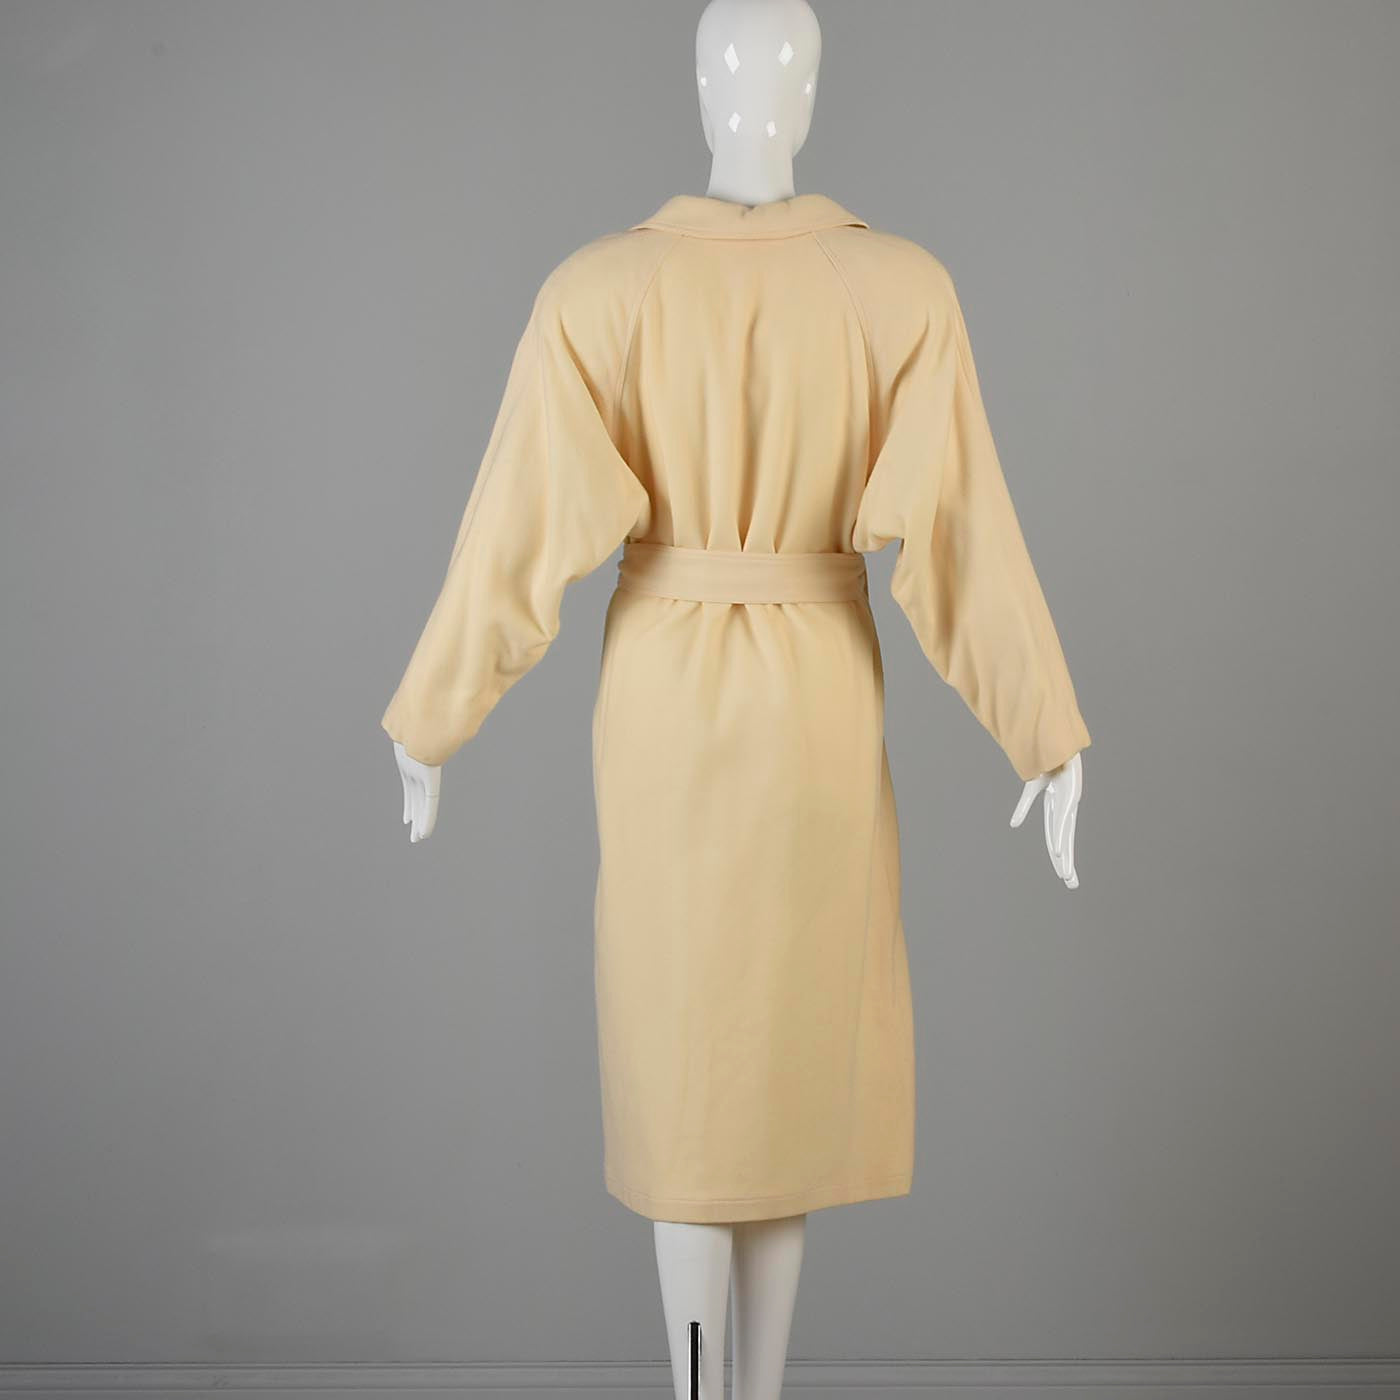 1980s Avant Garde Coat in Cream Wool